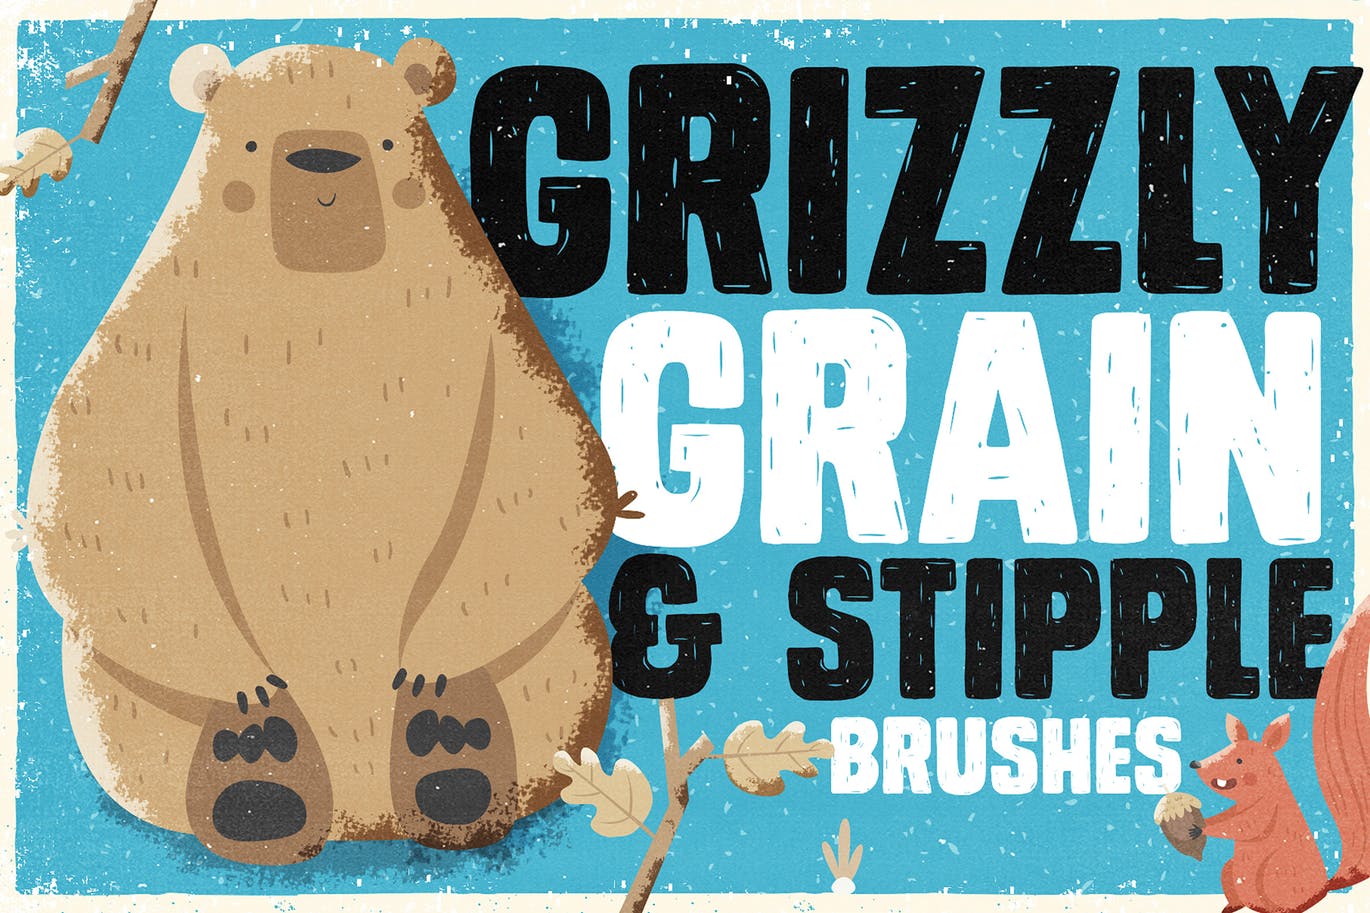 手绘设计师必备-流行的仿旧阴影效果点画创作PS笔刷大洋岛精选 Grizzly Grain & Stipple Shader Brushes插图